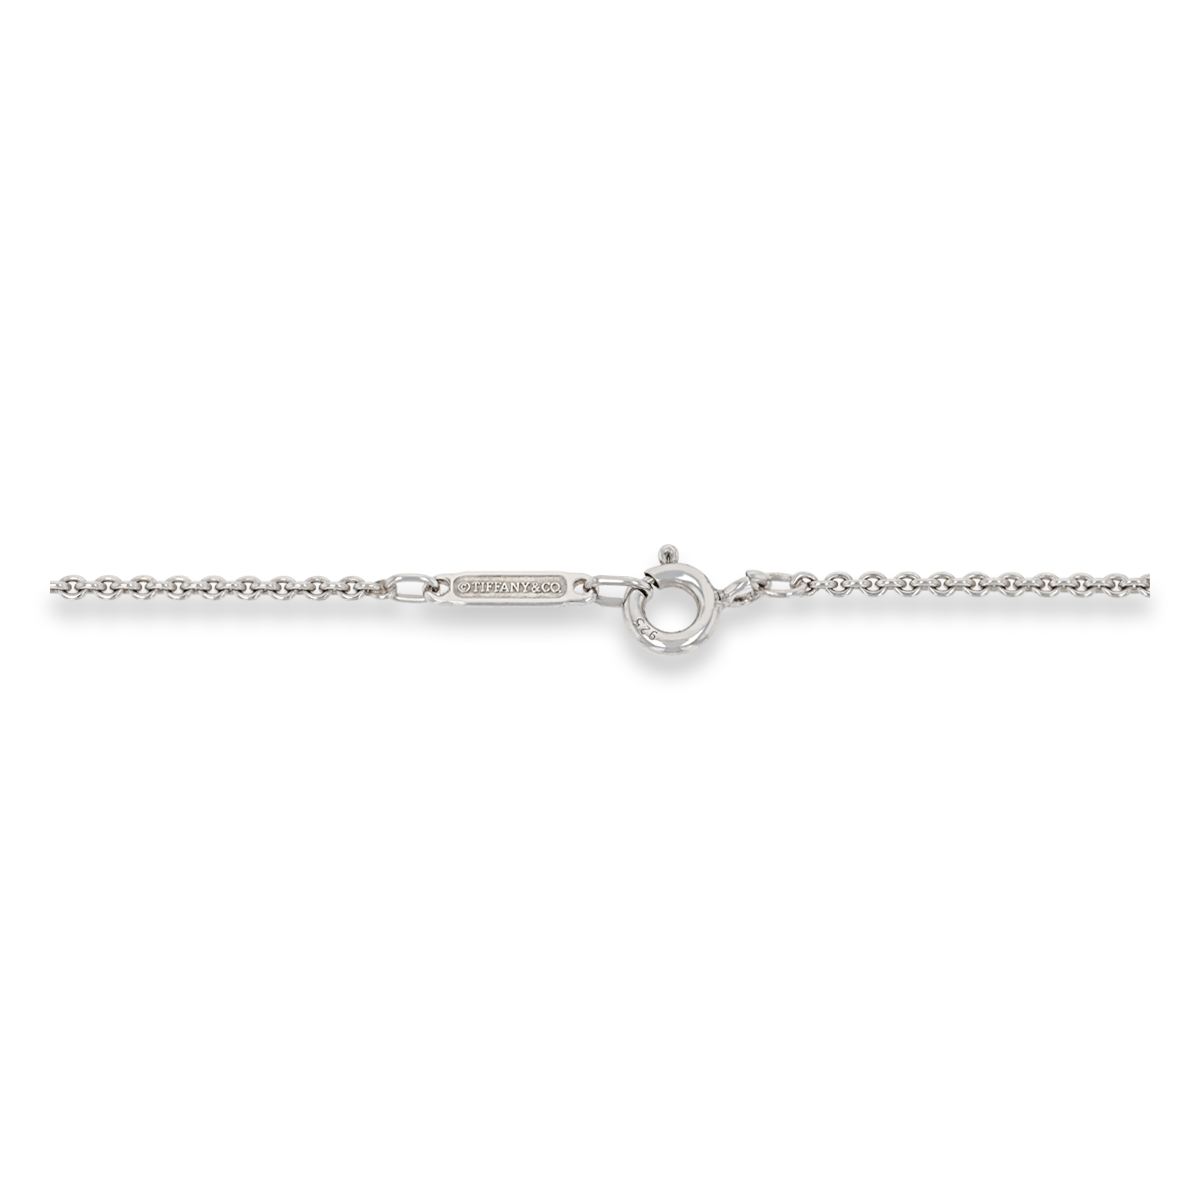 Tiffany & Co. Sterling Silver 1837 Square Pendant & Chain